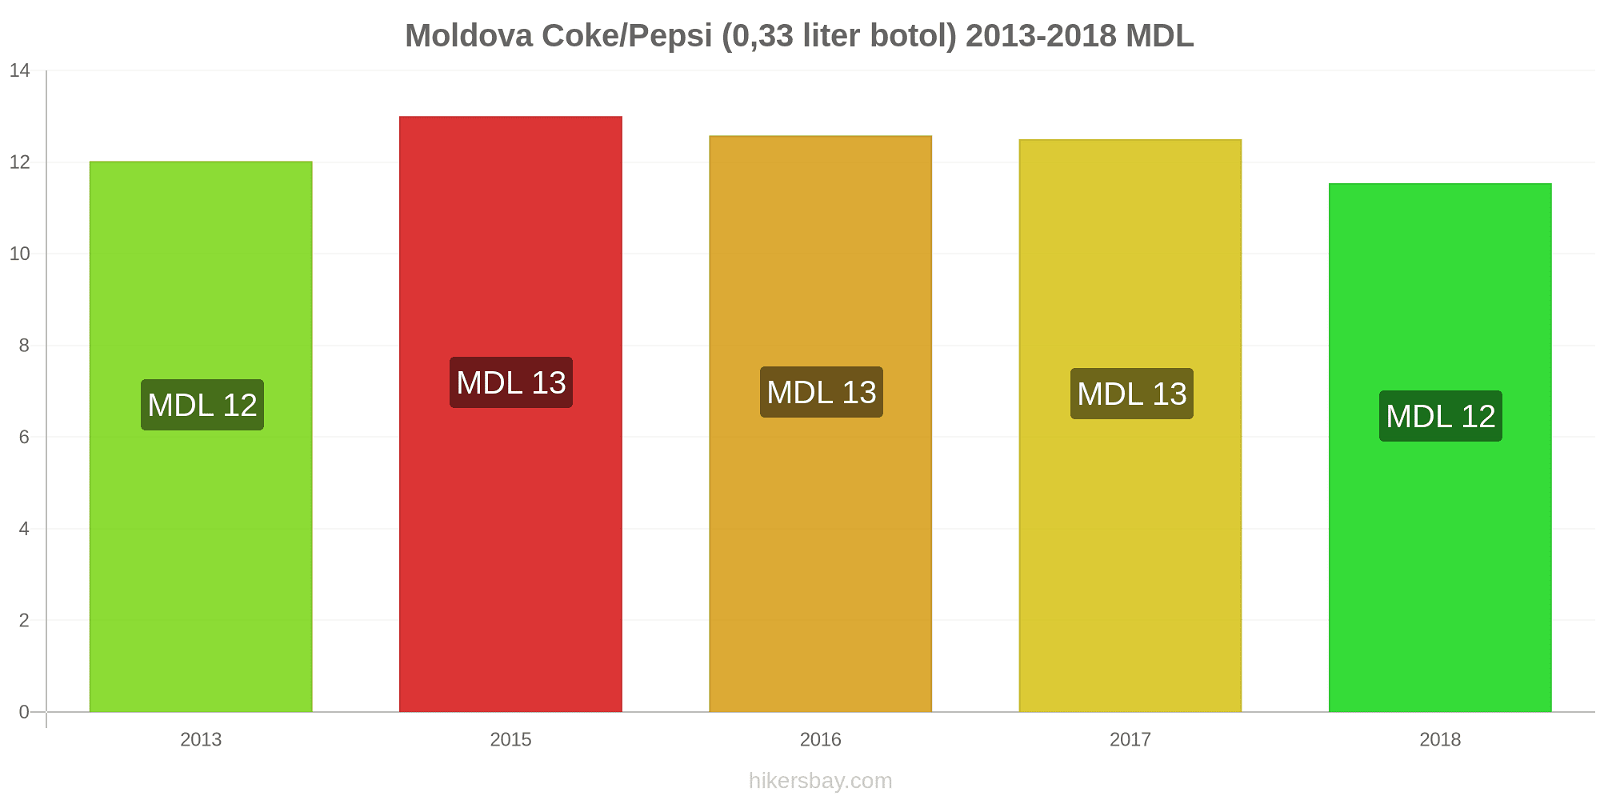 Moldova perubahan harga Coca-Cola/Pepsi (botol 0.33 liter) hikersbay.com